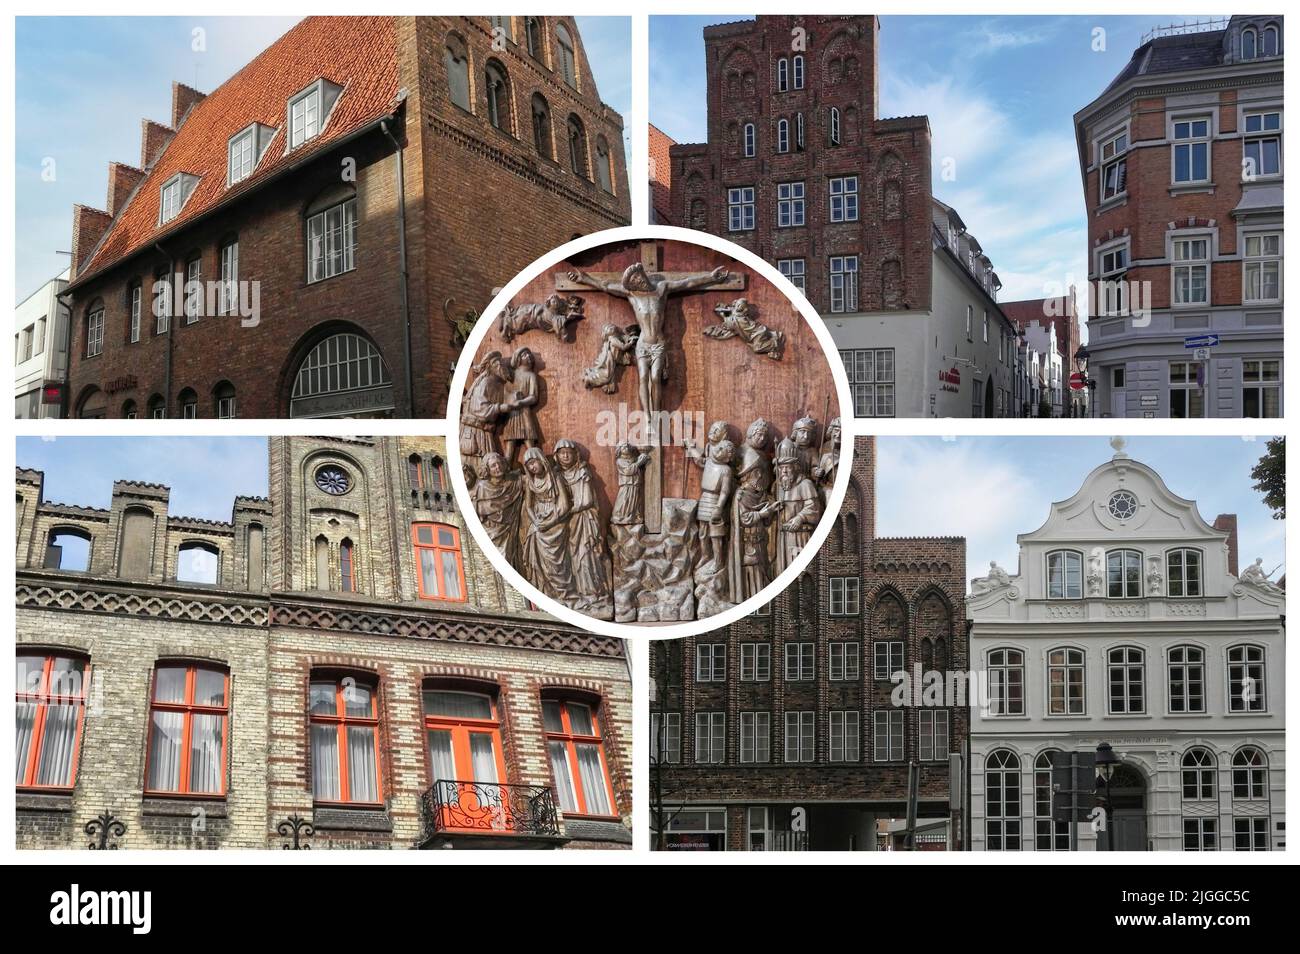 Lübeck est une ville allemande d'architecture gothique Baltique datant de l'époque où elle était la capitale médiévale de la Ligue hanséatique Banque D'Images